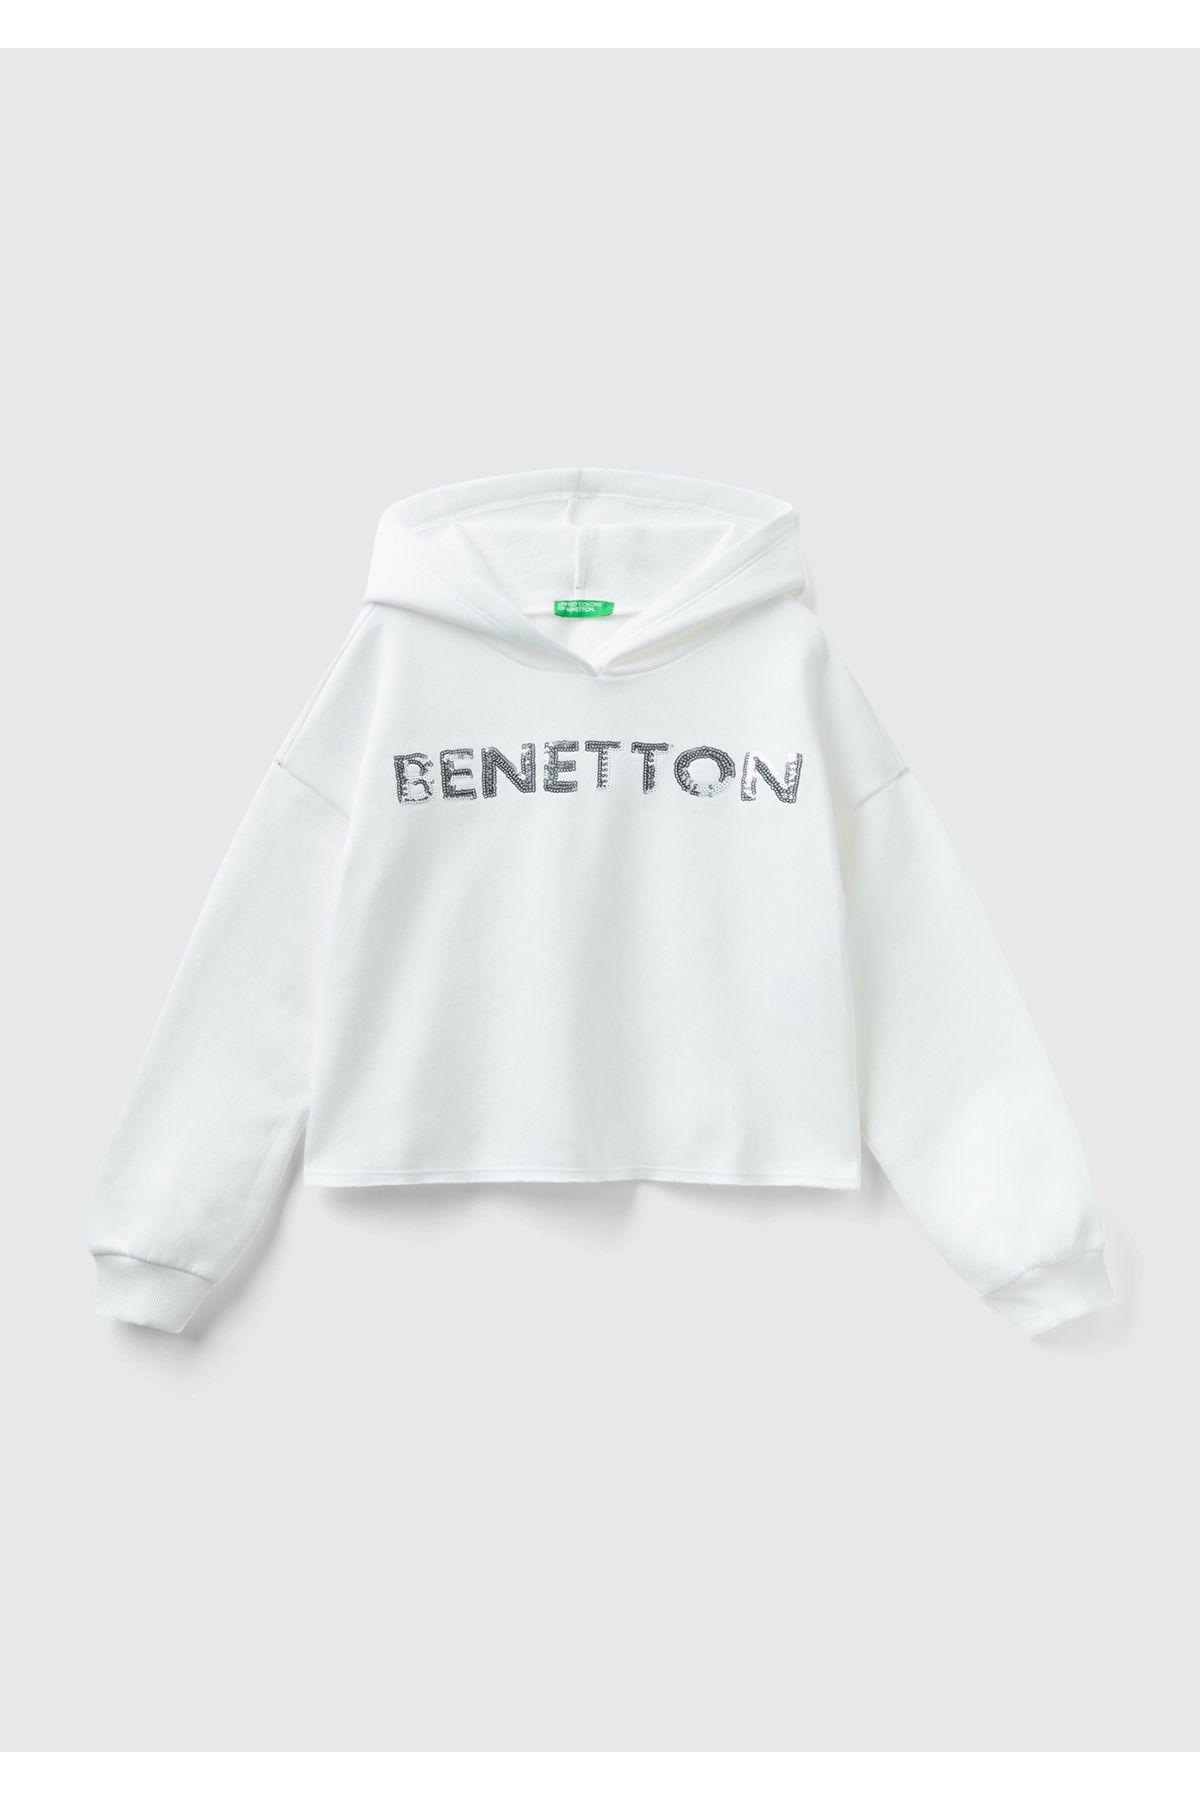 United Colors of Benetton Kız Çocuk Krem Slogan Baskılı Crop Sweatshirt